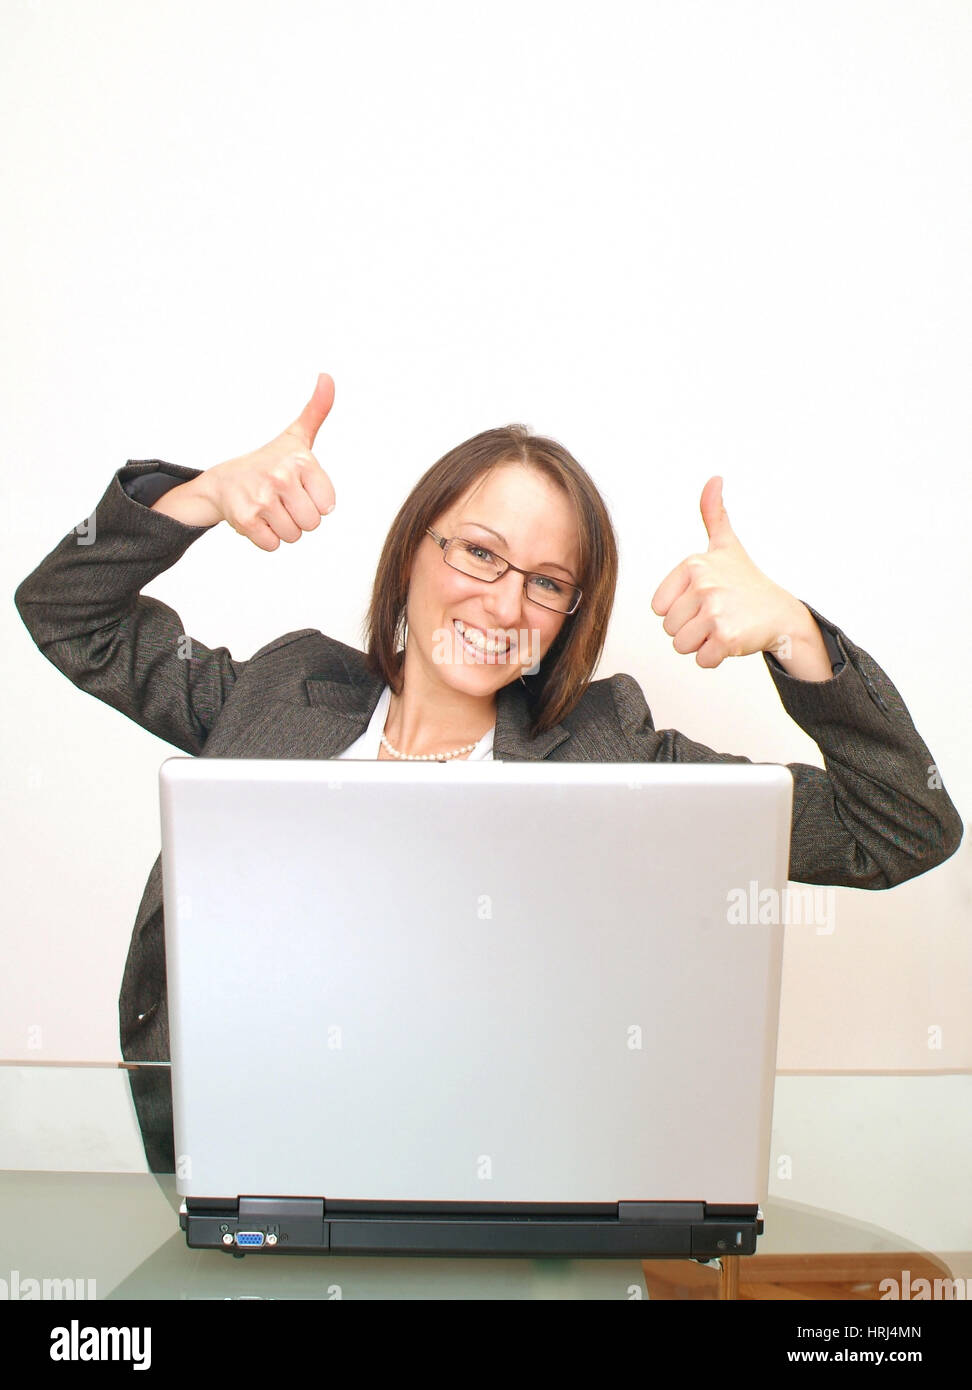 Erfolgreiche Gesch?ftsfrau mit Laptop - mujer de negocios exitosa con laptop, Symbolfotos Foto de stock